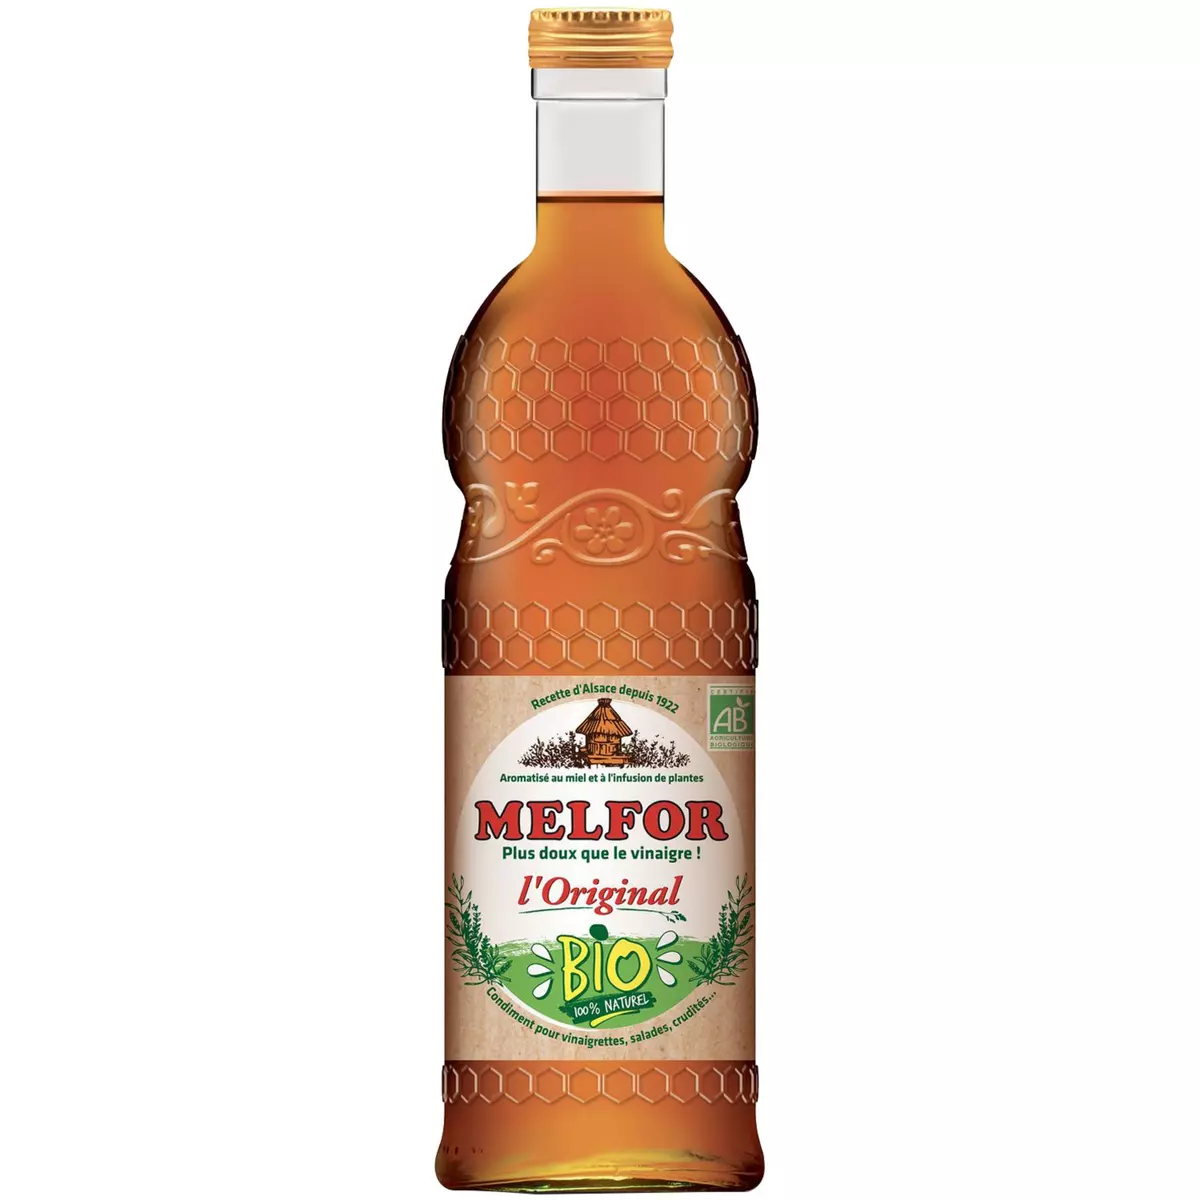 MELFOR Vinaigre bio l'Original aromatisé au miel et plantes 50cl